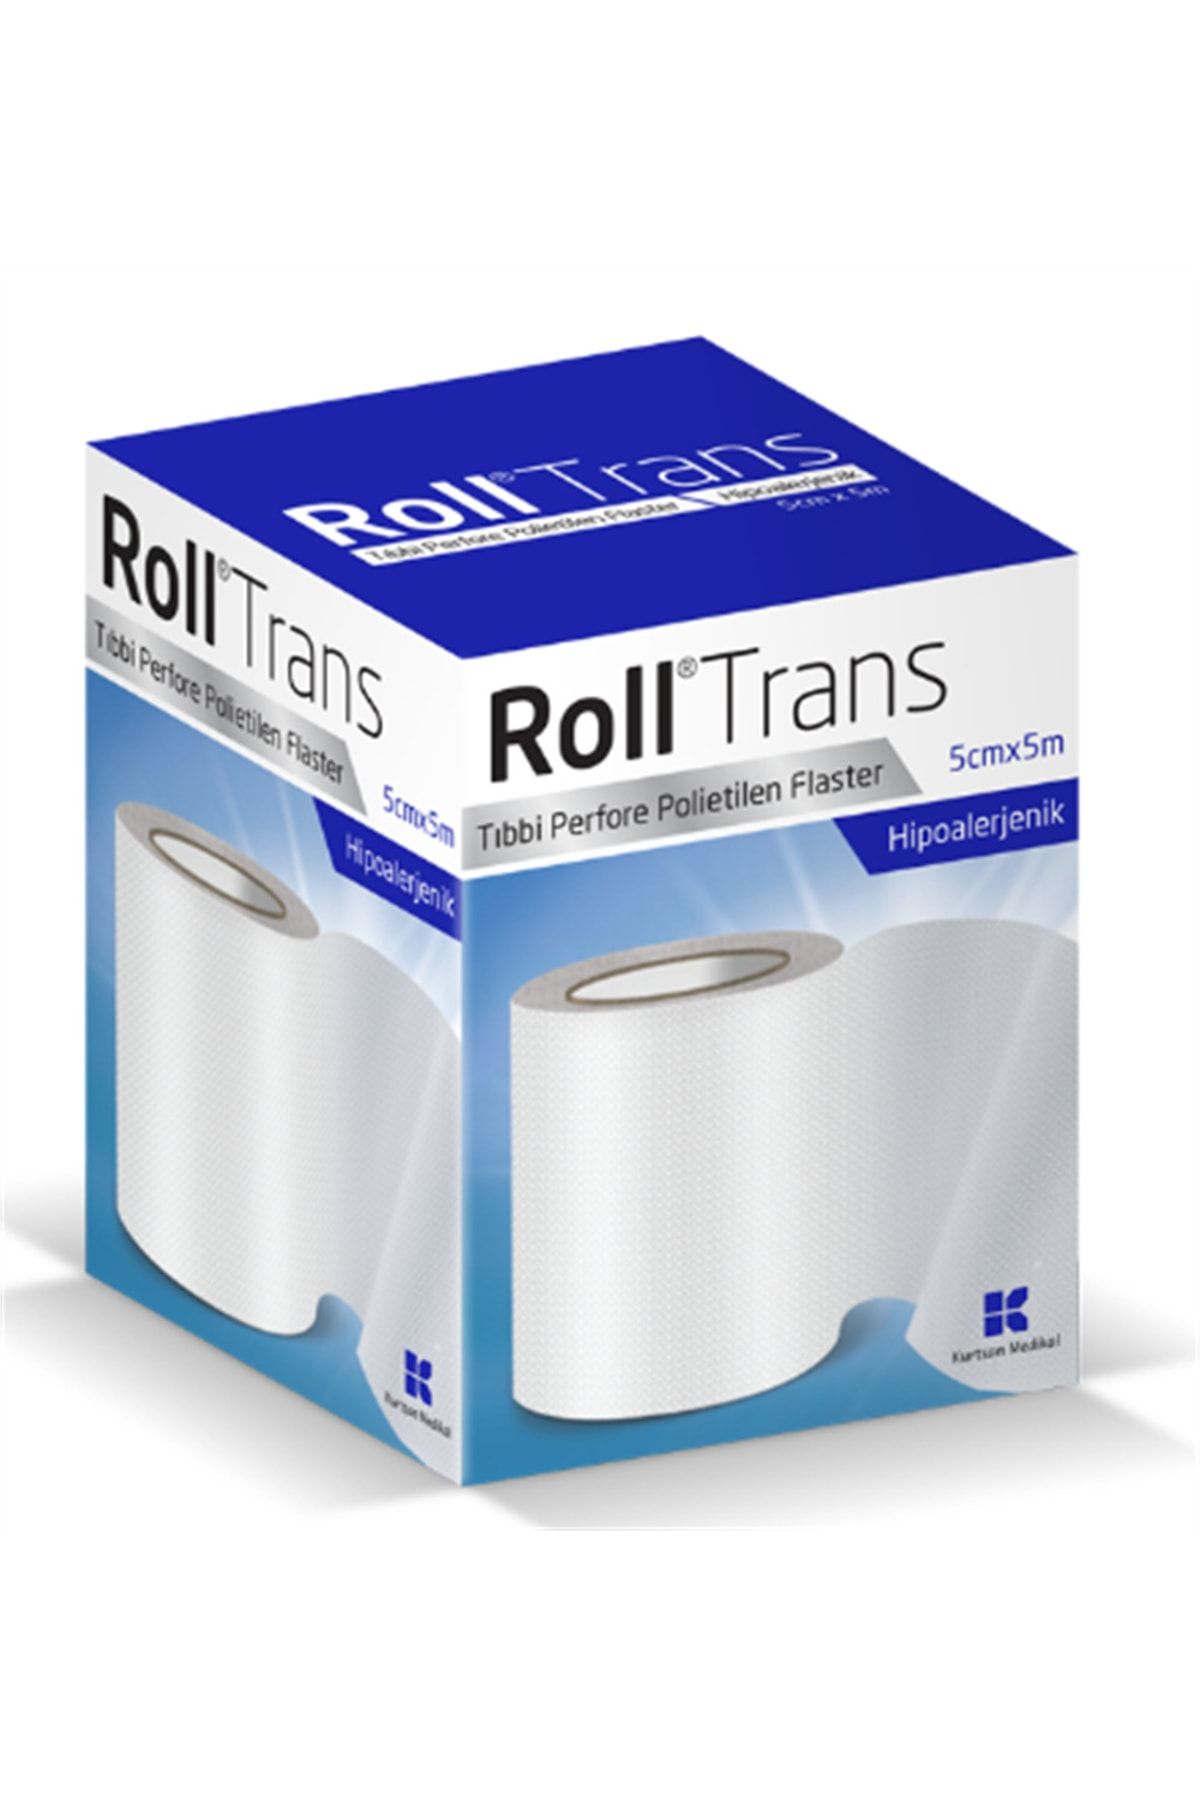 Roll Trans 5x5